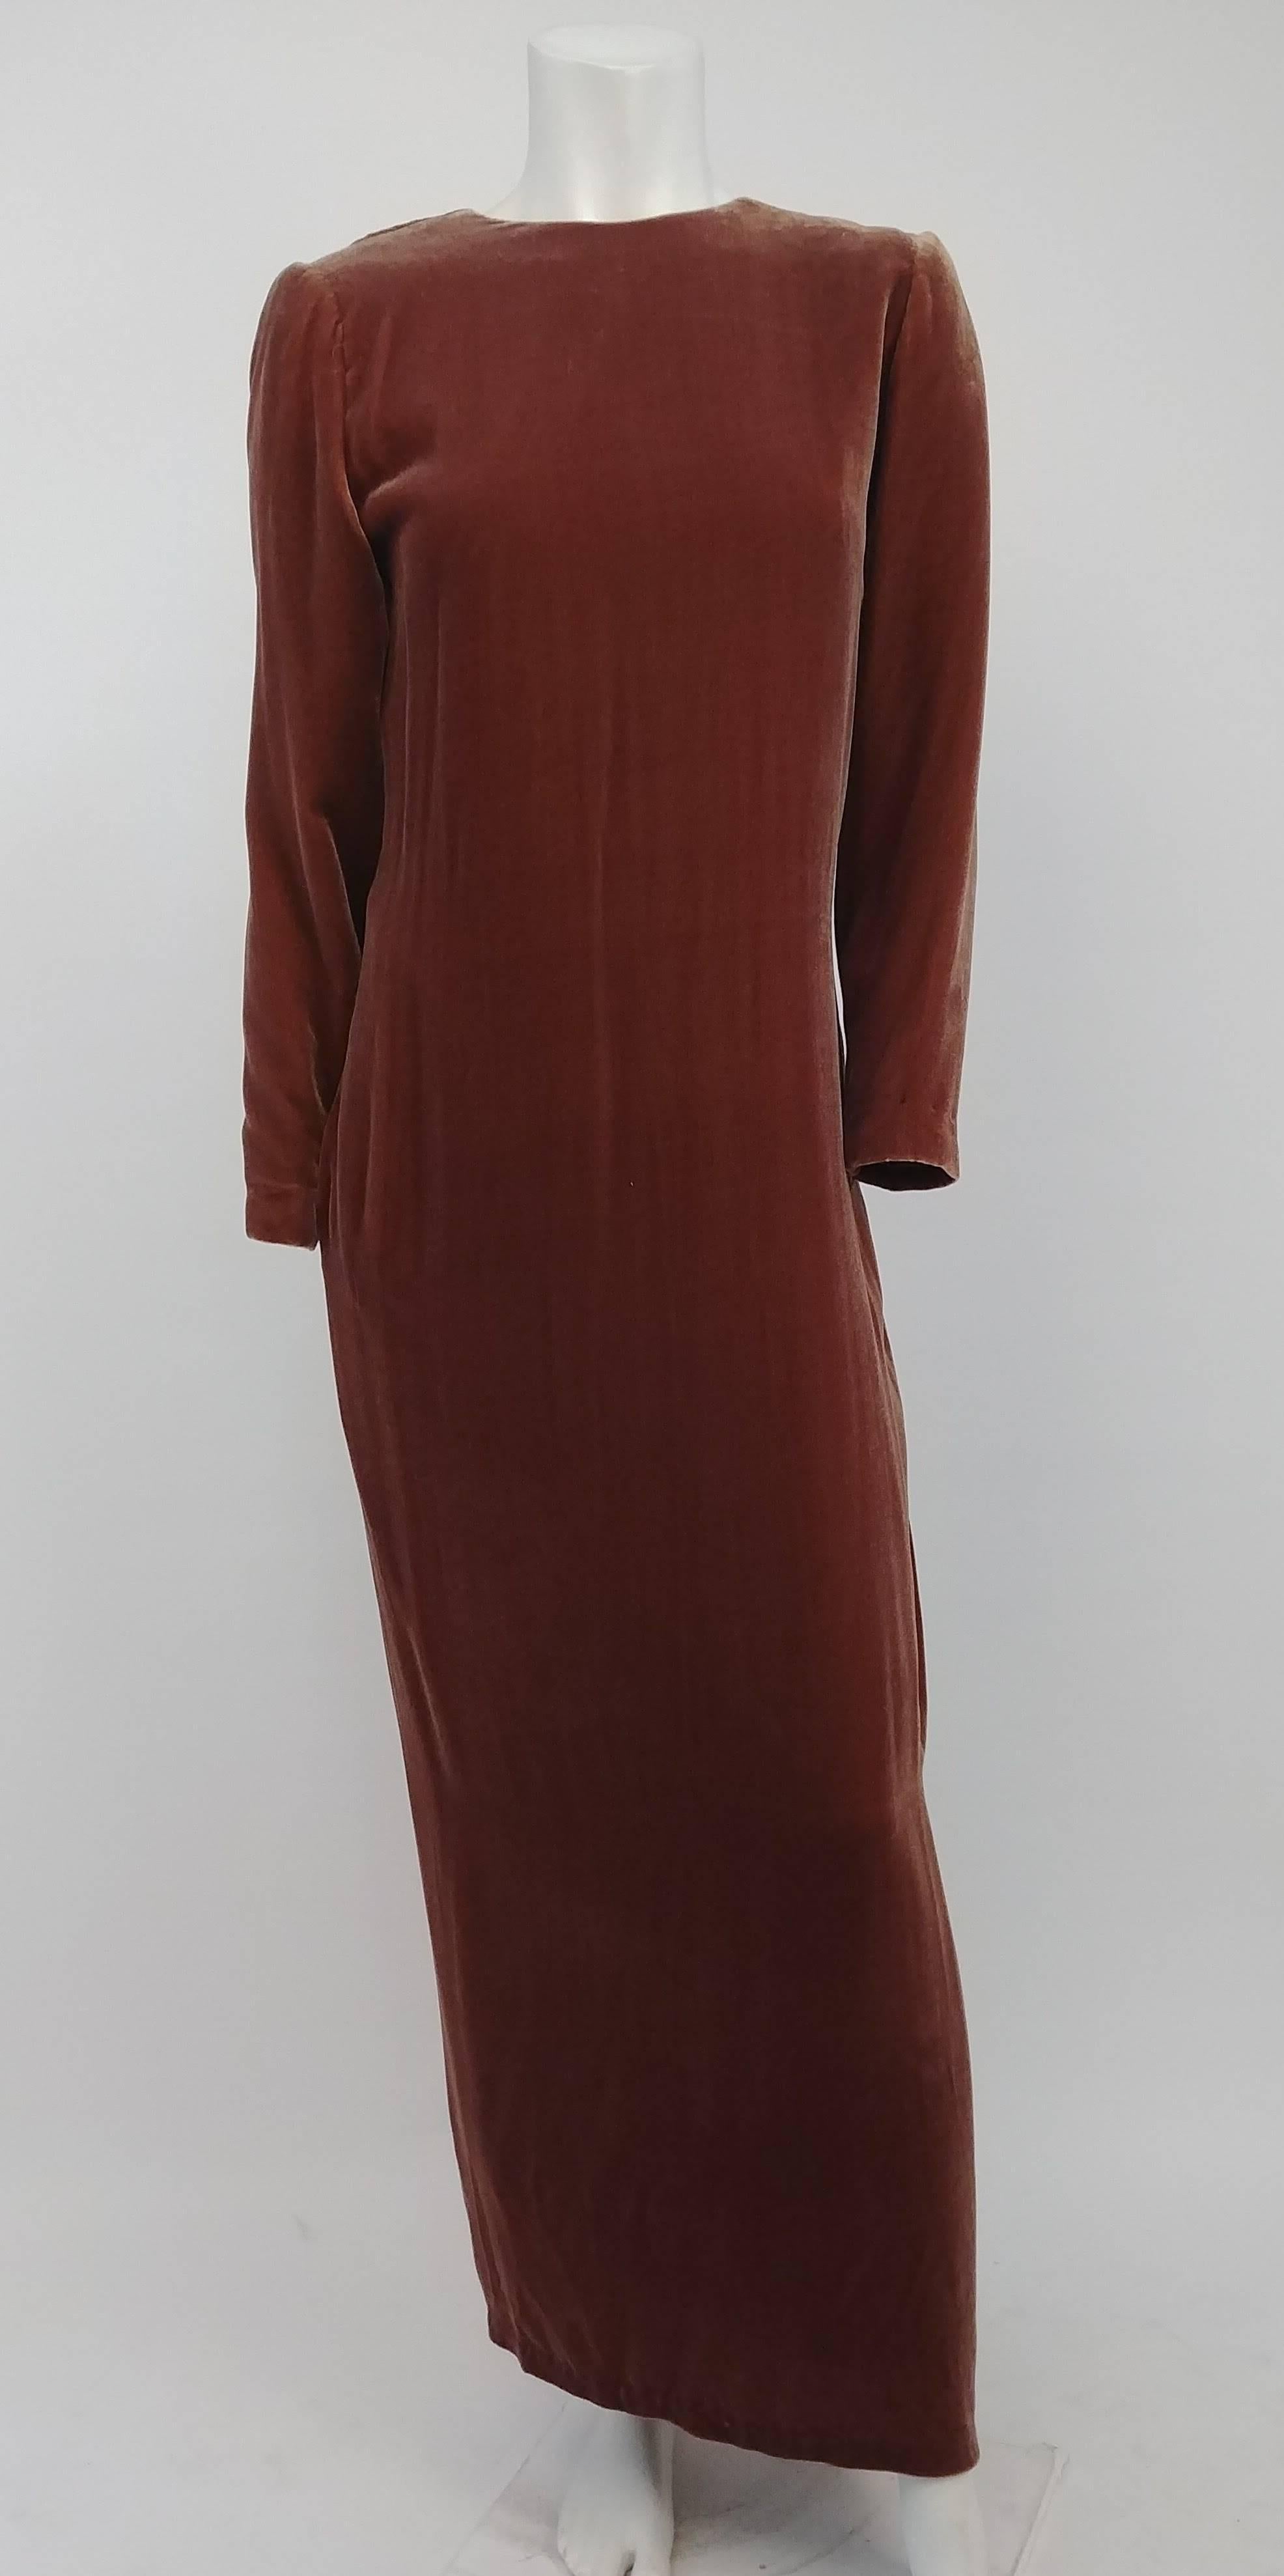 80s Cognac Velvet Draped Evening Dress. Simple velvet ankle-length dress with beautiful draped back detail. 